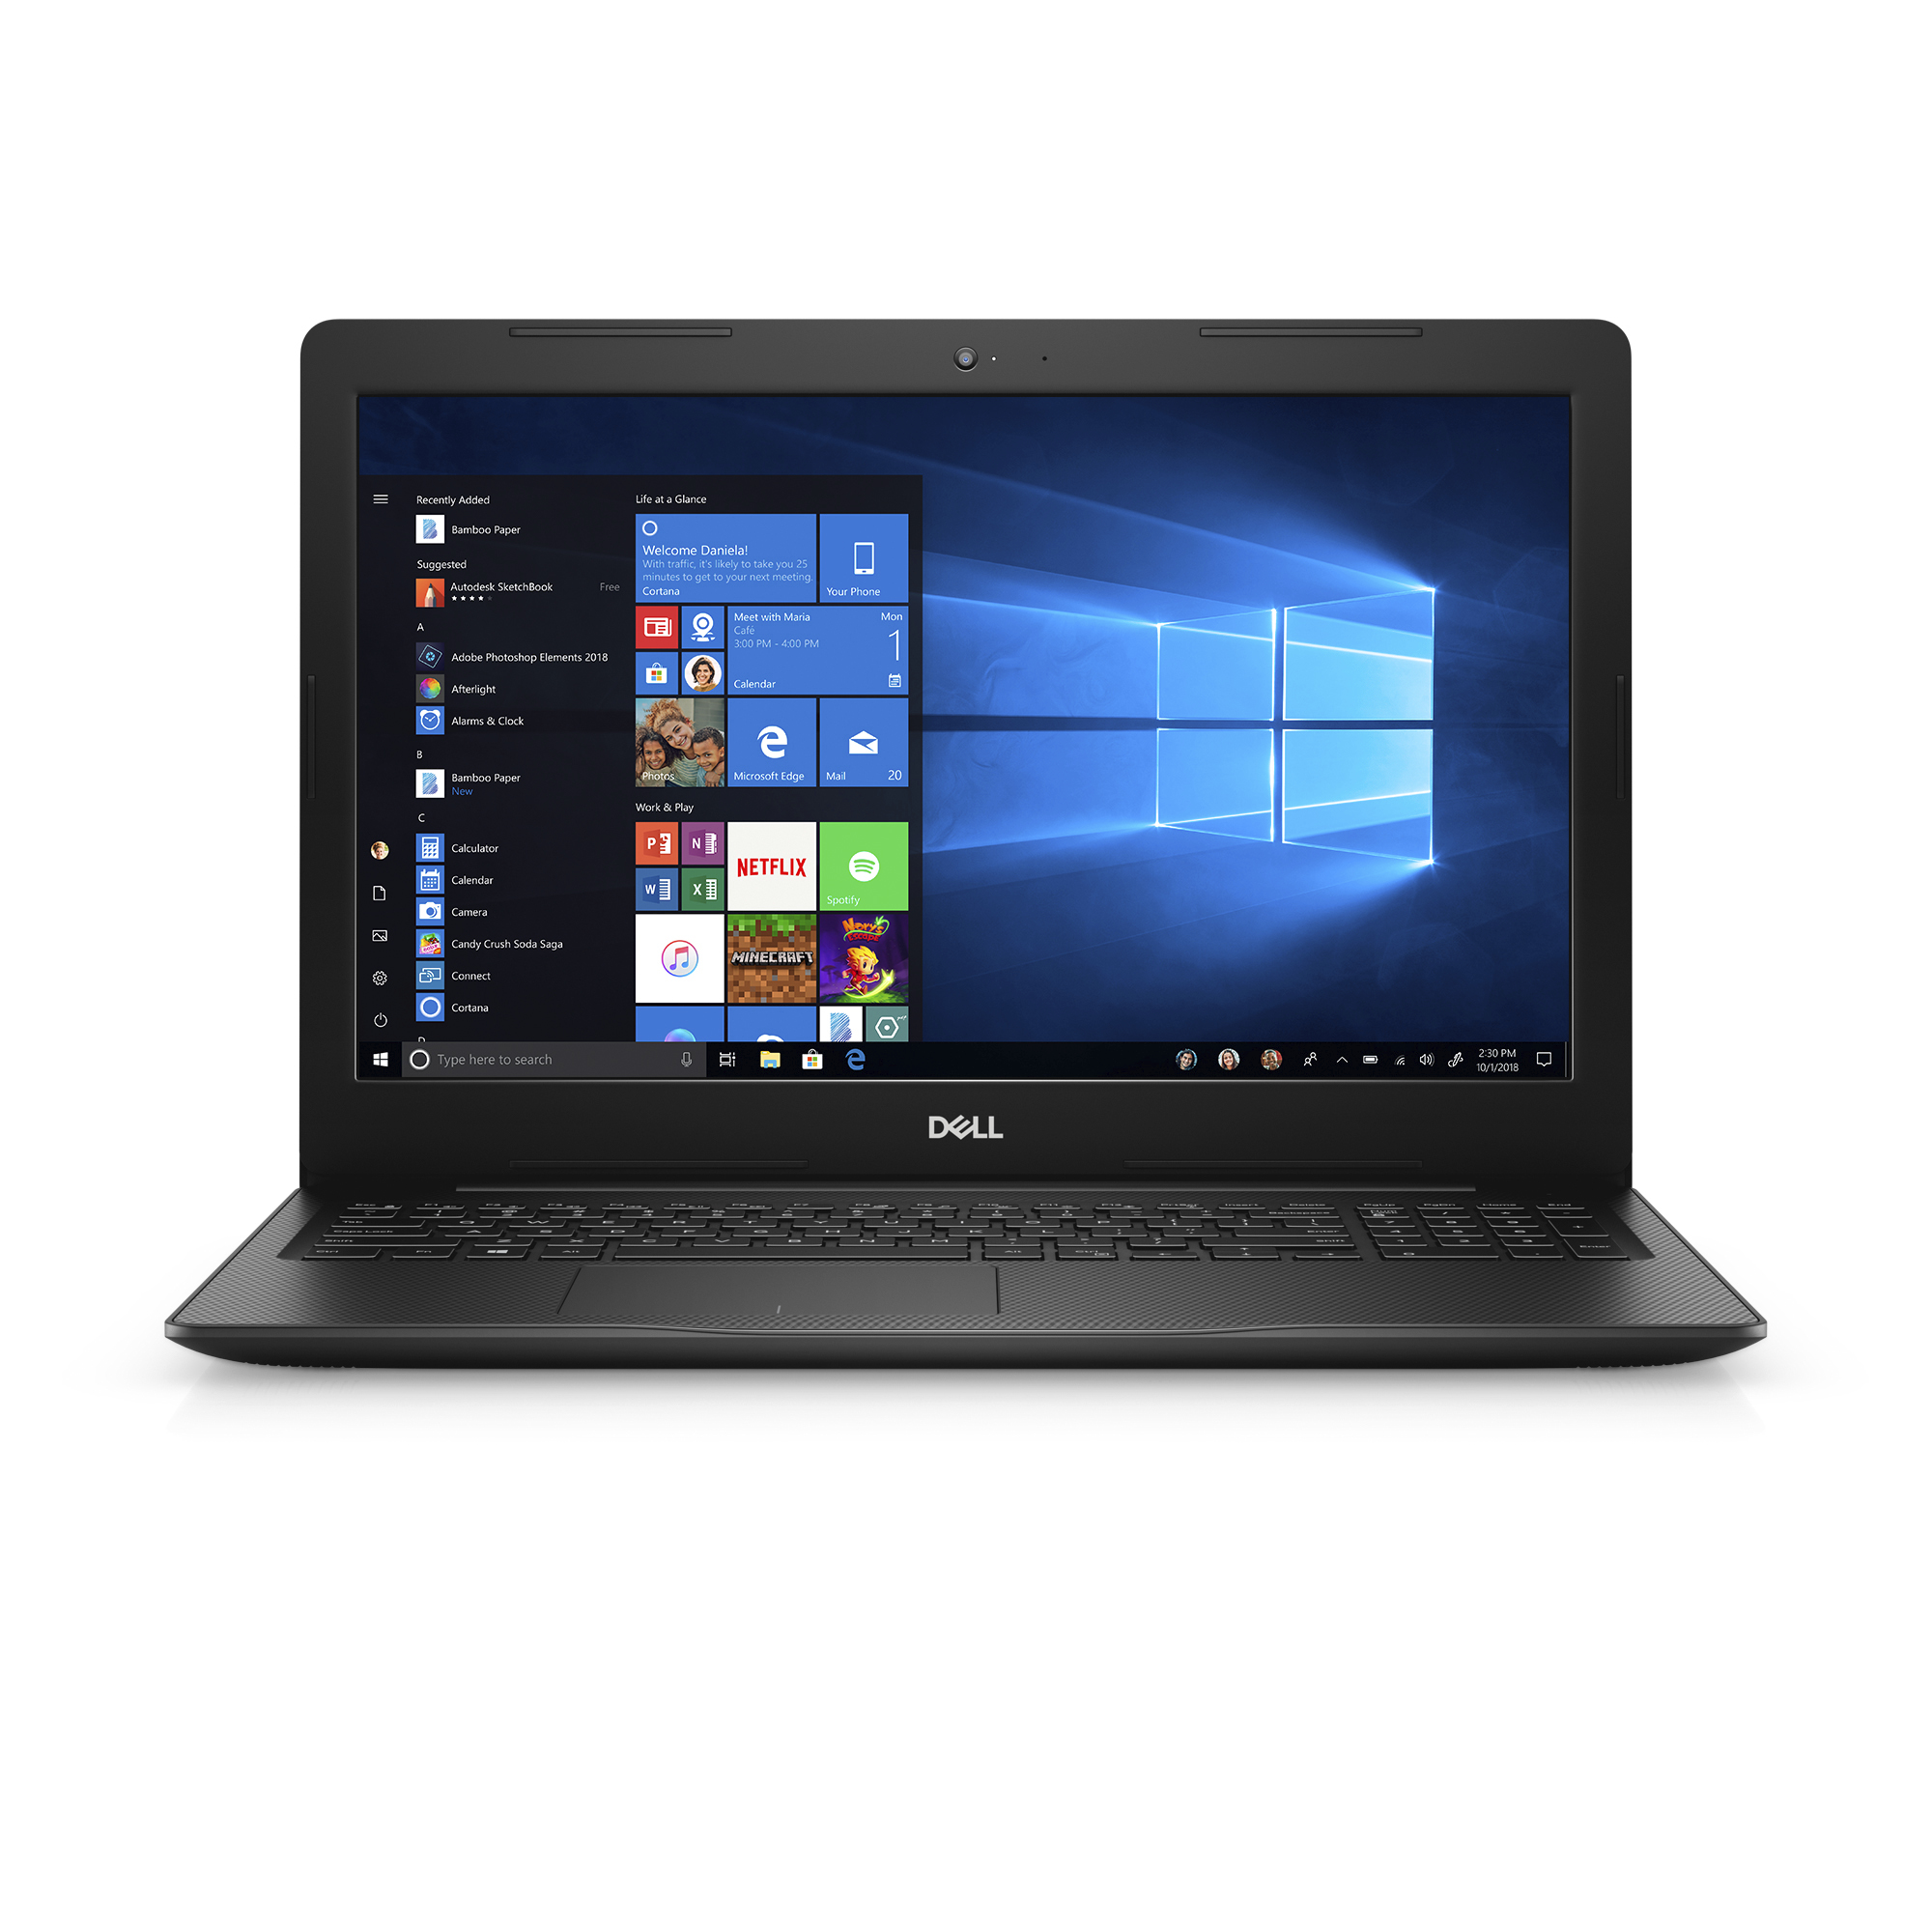 Dell Inspiron 15 3583 15.6-inch FHD Laptop (Quad i7-8565U / 8GB / 256GB SSD)